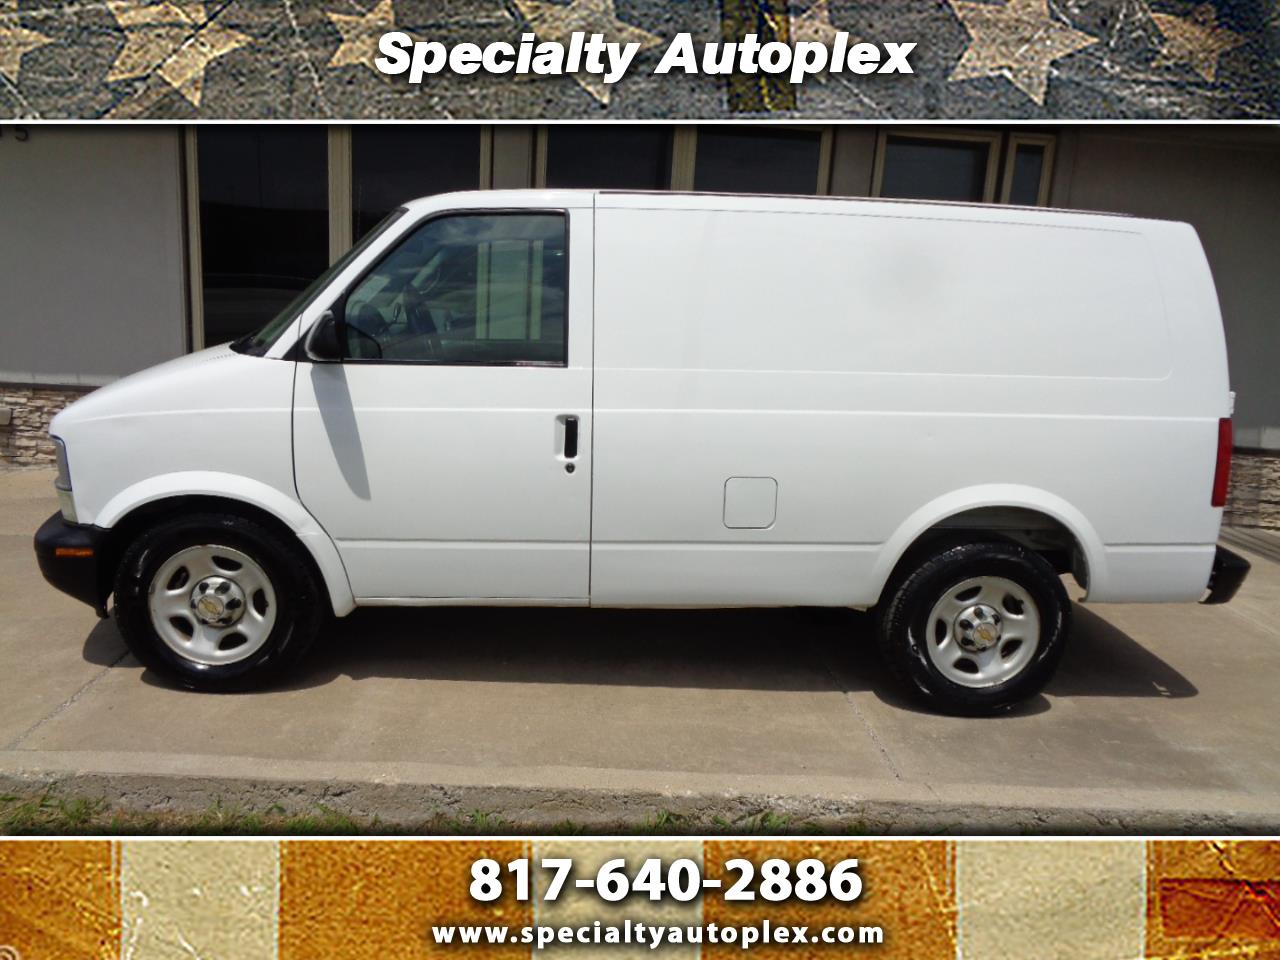 Used 2004 Chevrolet Astro Cargo Van 2WD for Sale in Arlington, Dallas, Fort  W TX 76011 Specialty Autoplex